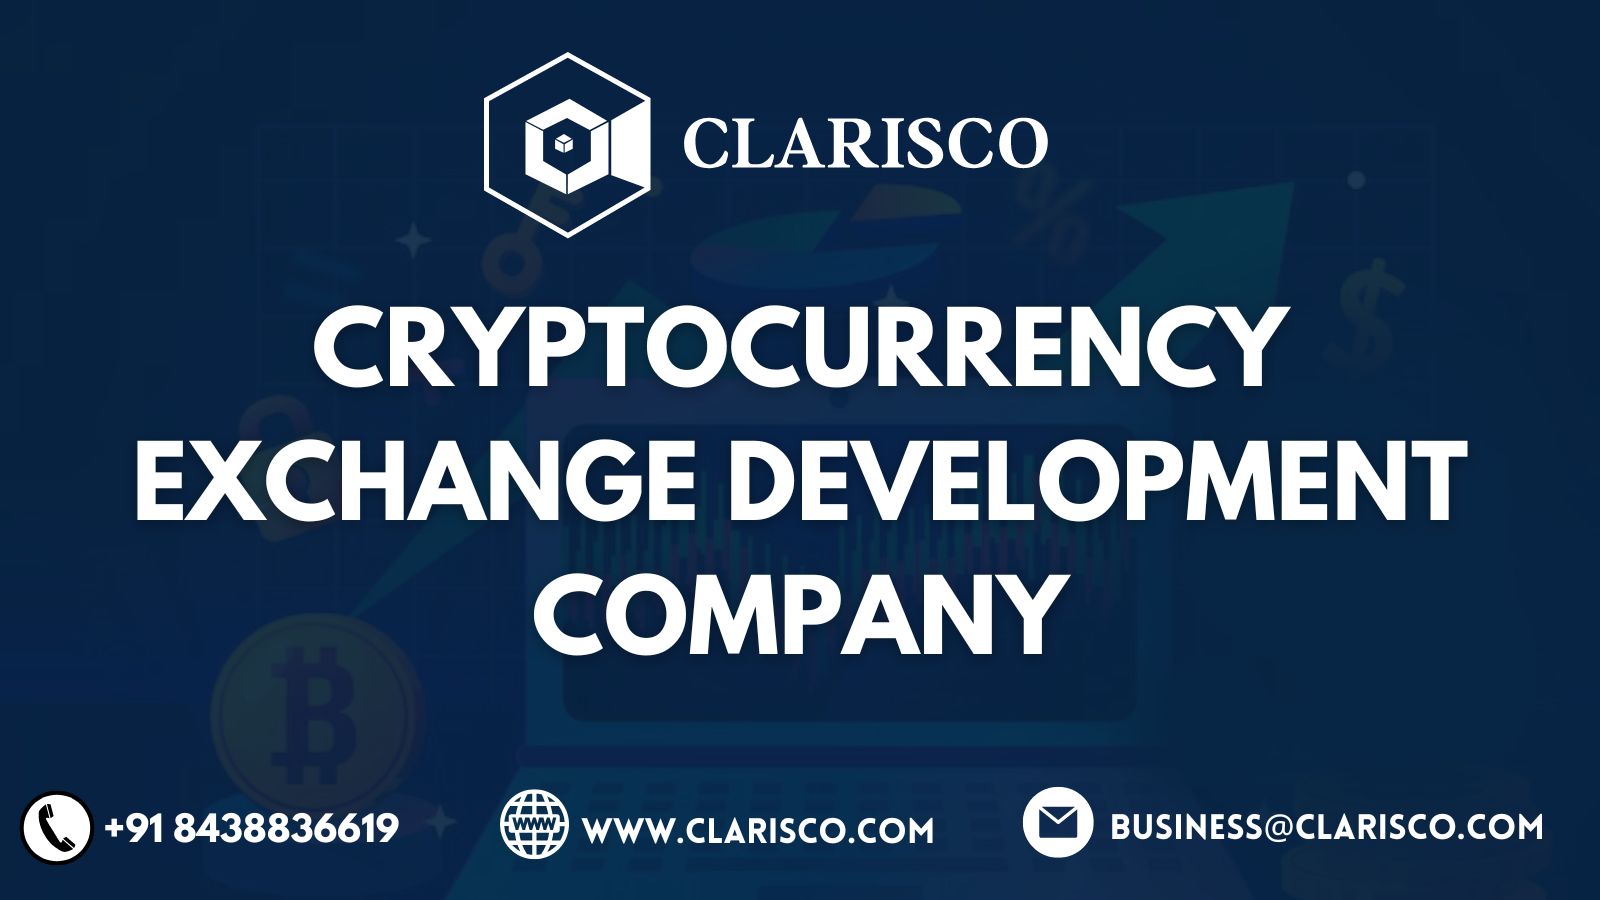     Cryptocurrency exchange development company | Clarisco  